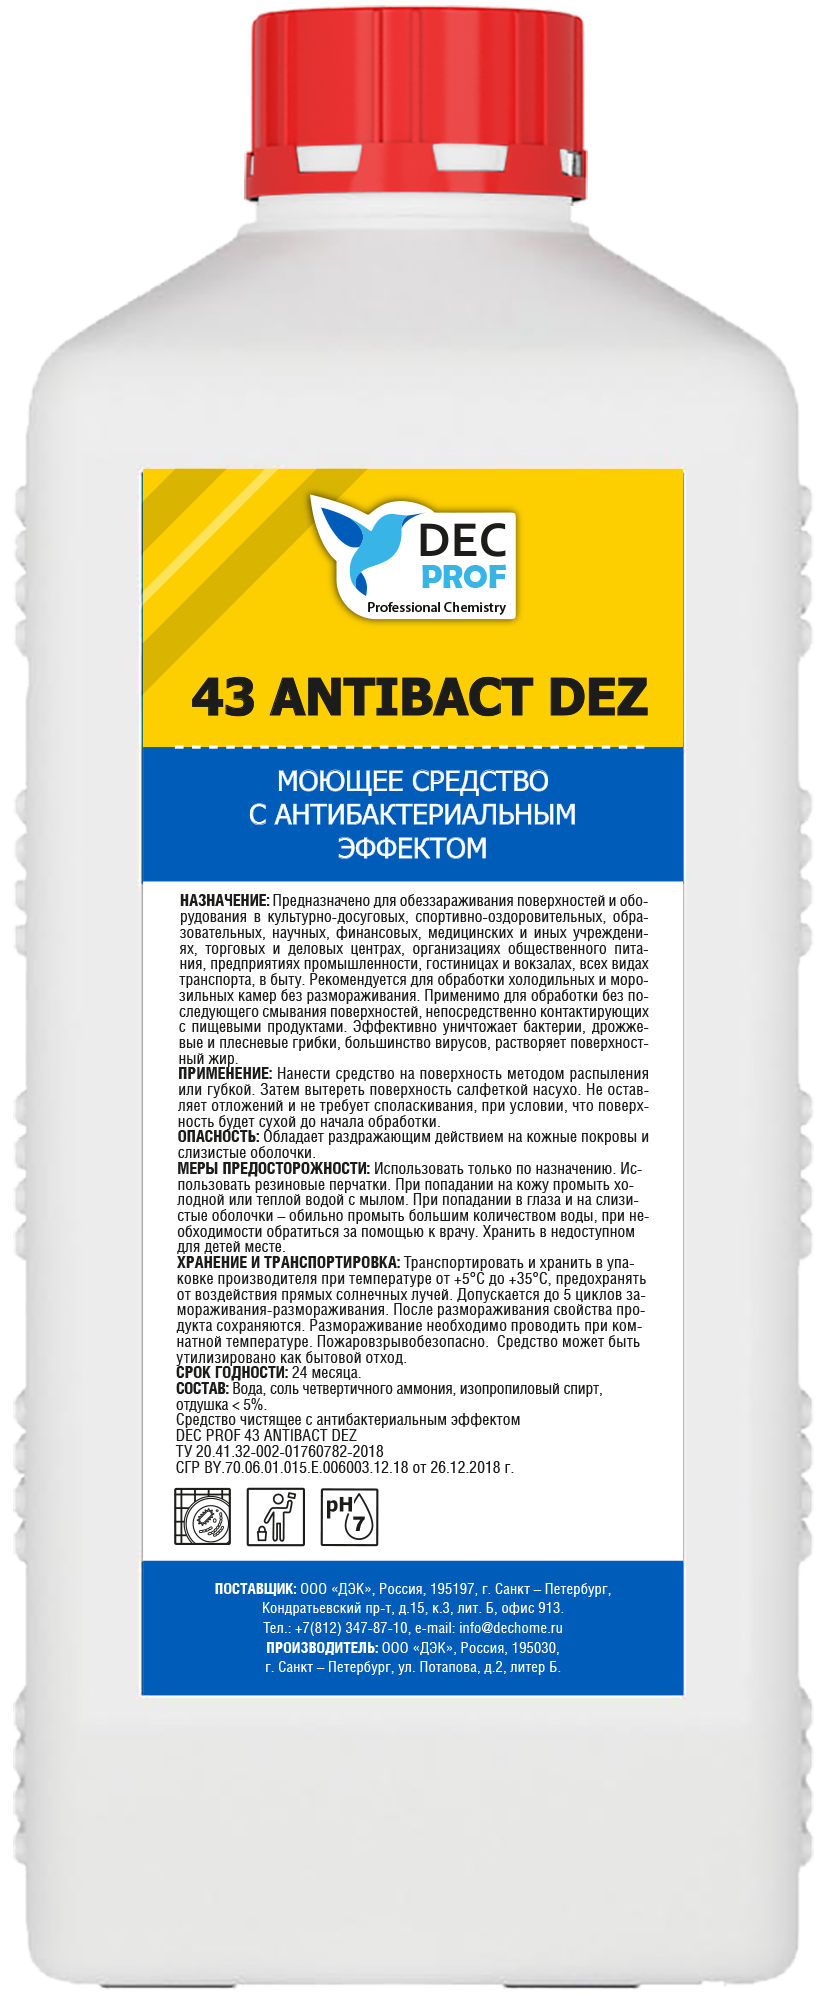 82639135 Моющее средство Prof с антибактериальным эффектом 1 л STLM-0032628 DEC